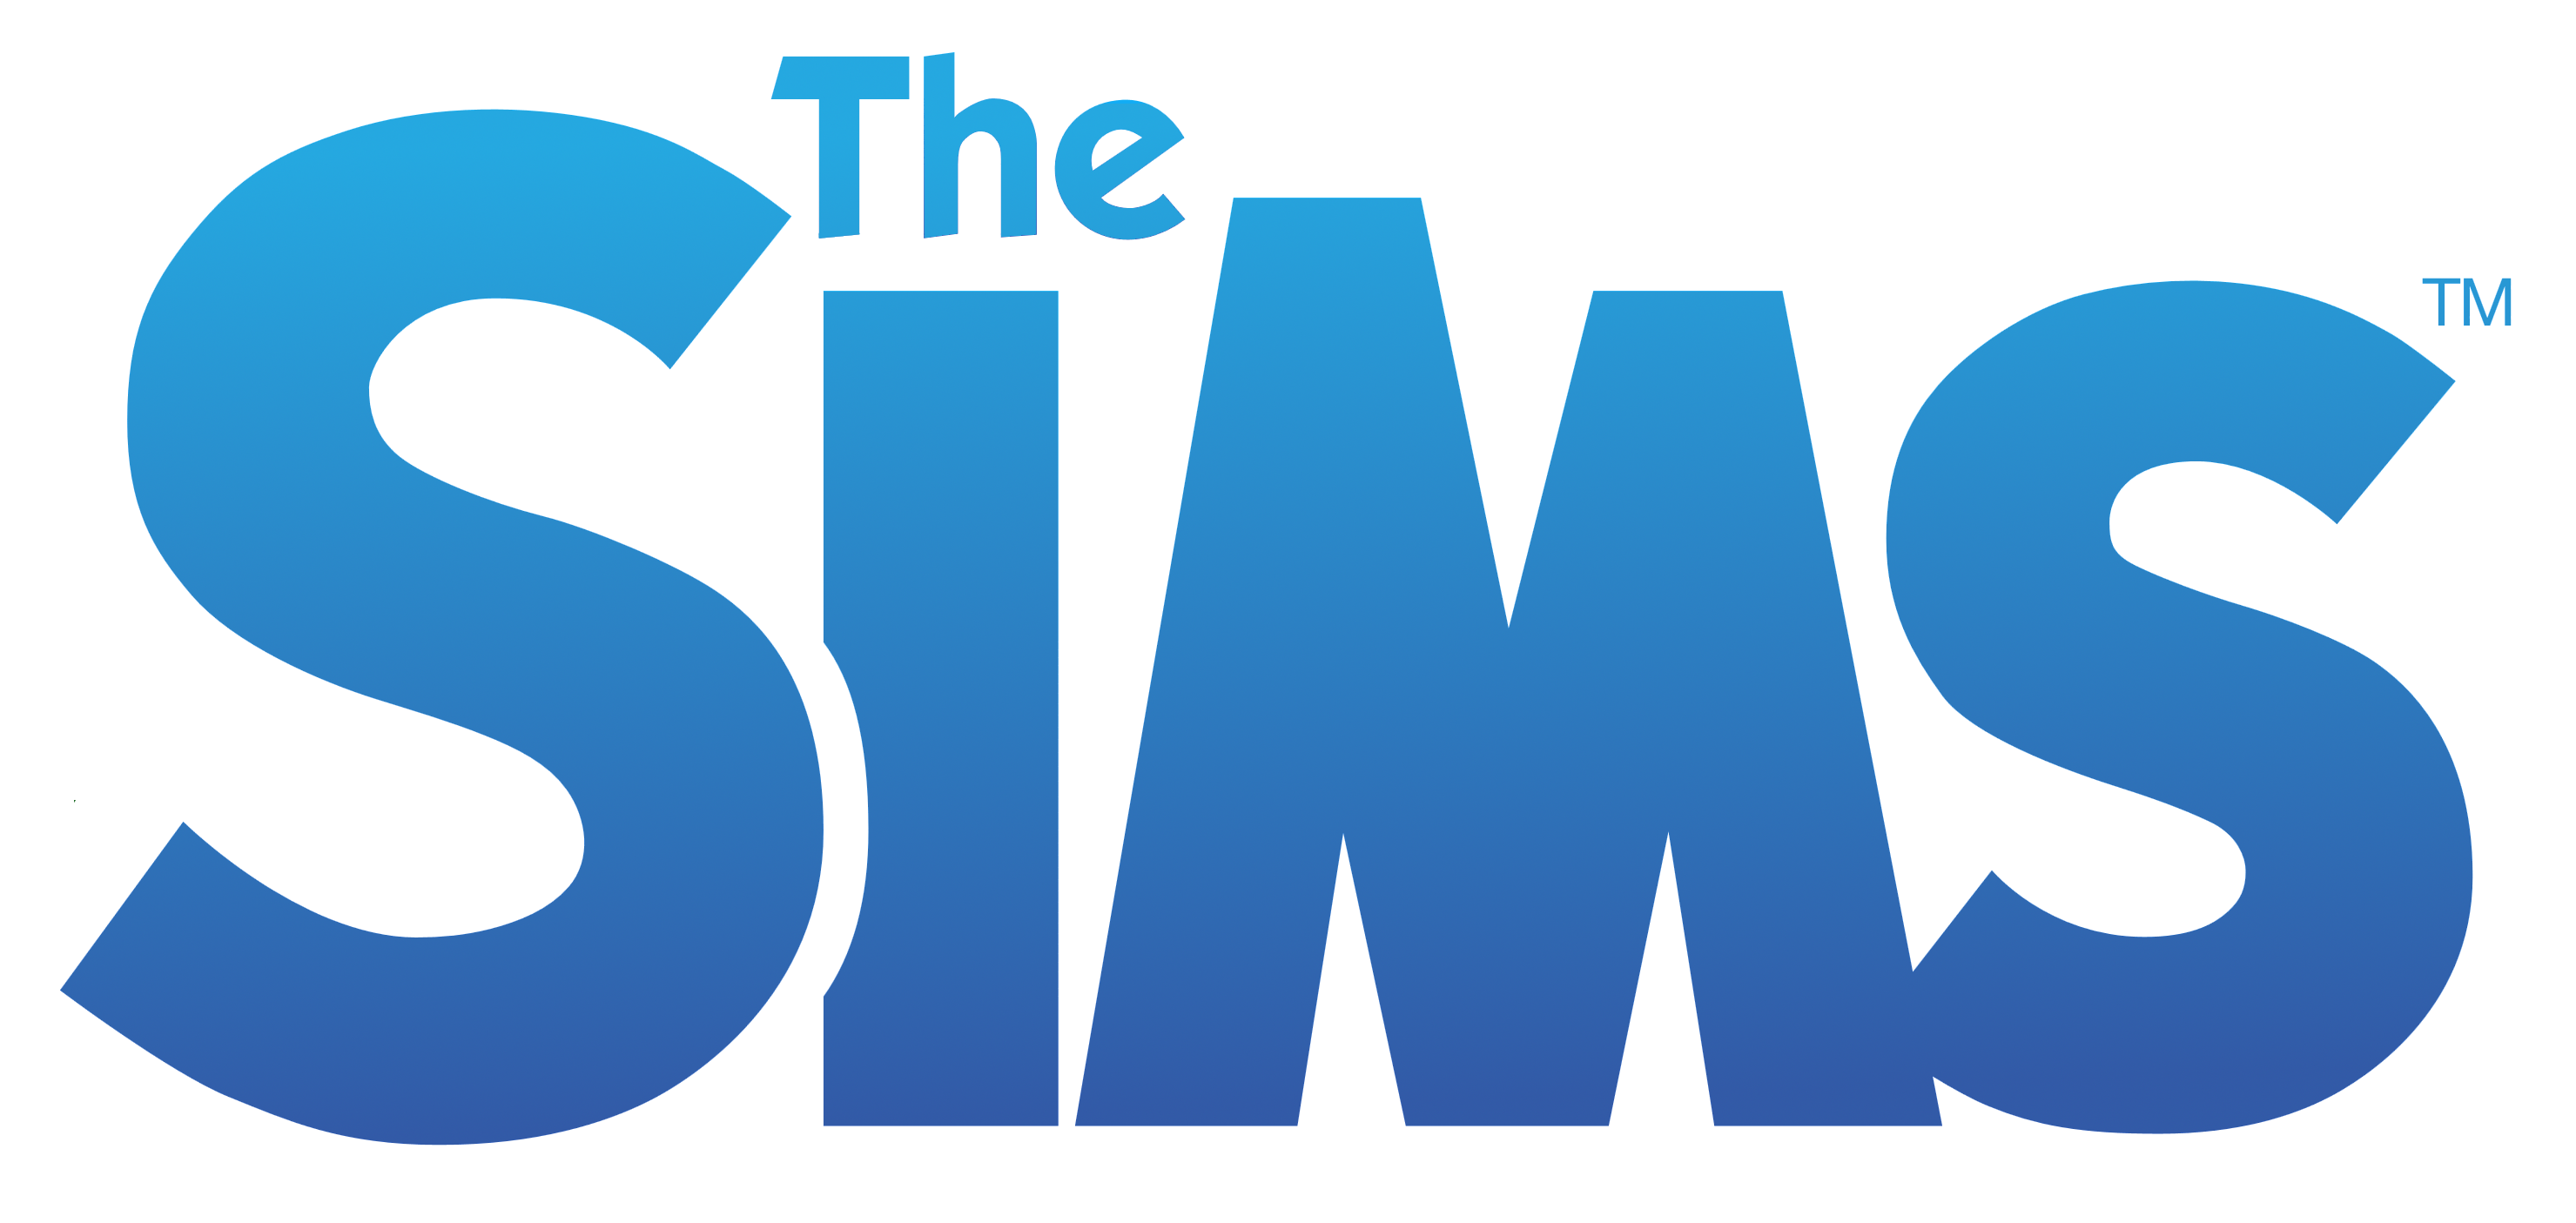 Шрифт симс 4. SIMS логотип. SIMS 4 логотип. SIMS надпись. Симс логотип на прозрачном фоне.